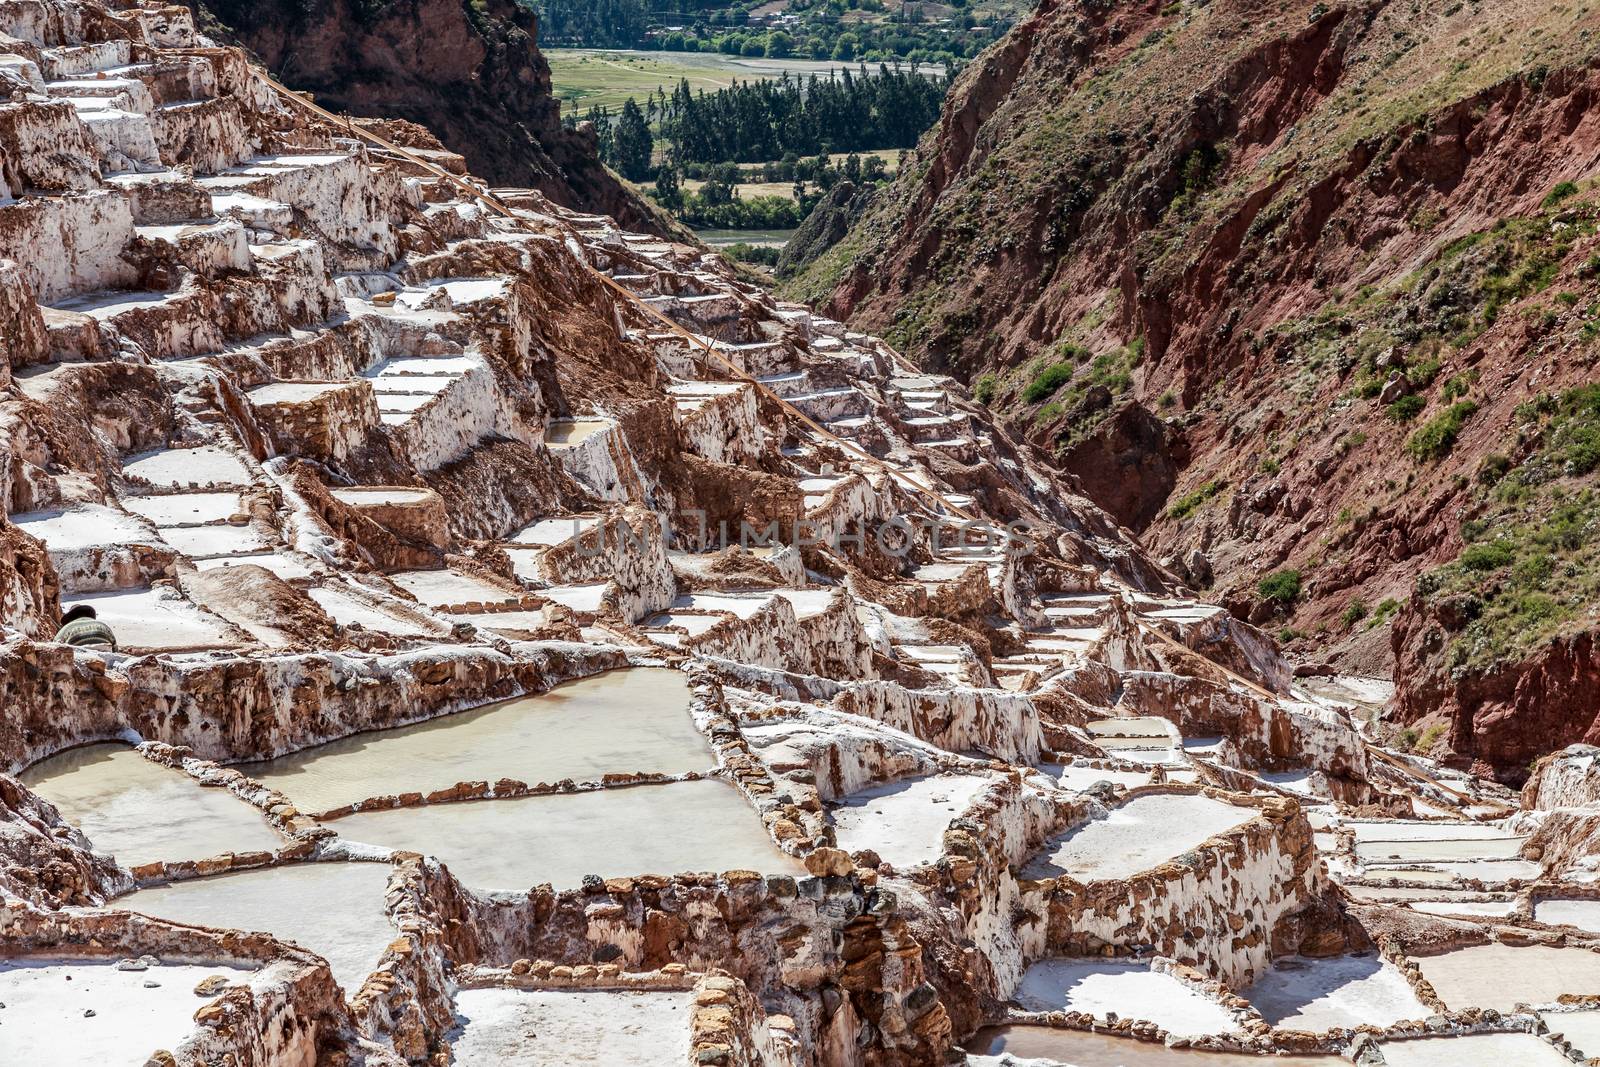 Salt mines terraces and basins, Salineras de Maras. Peru